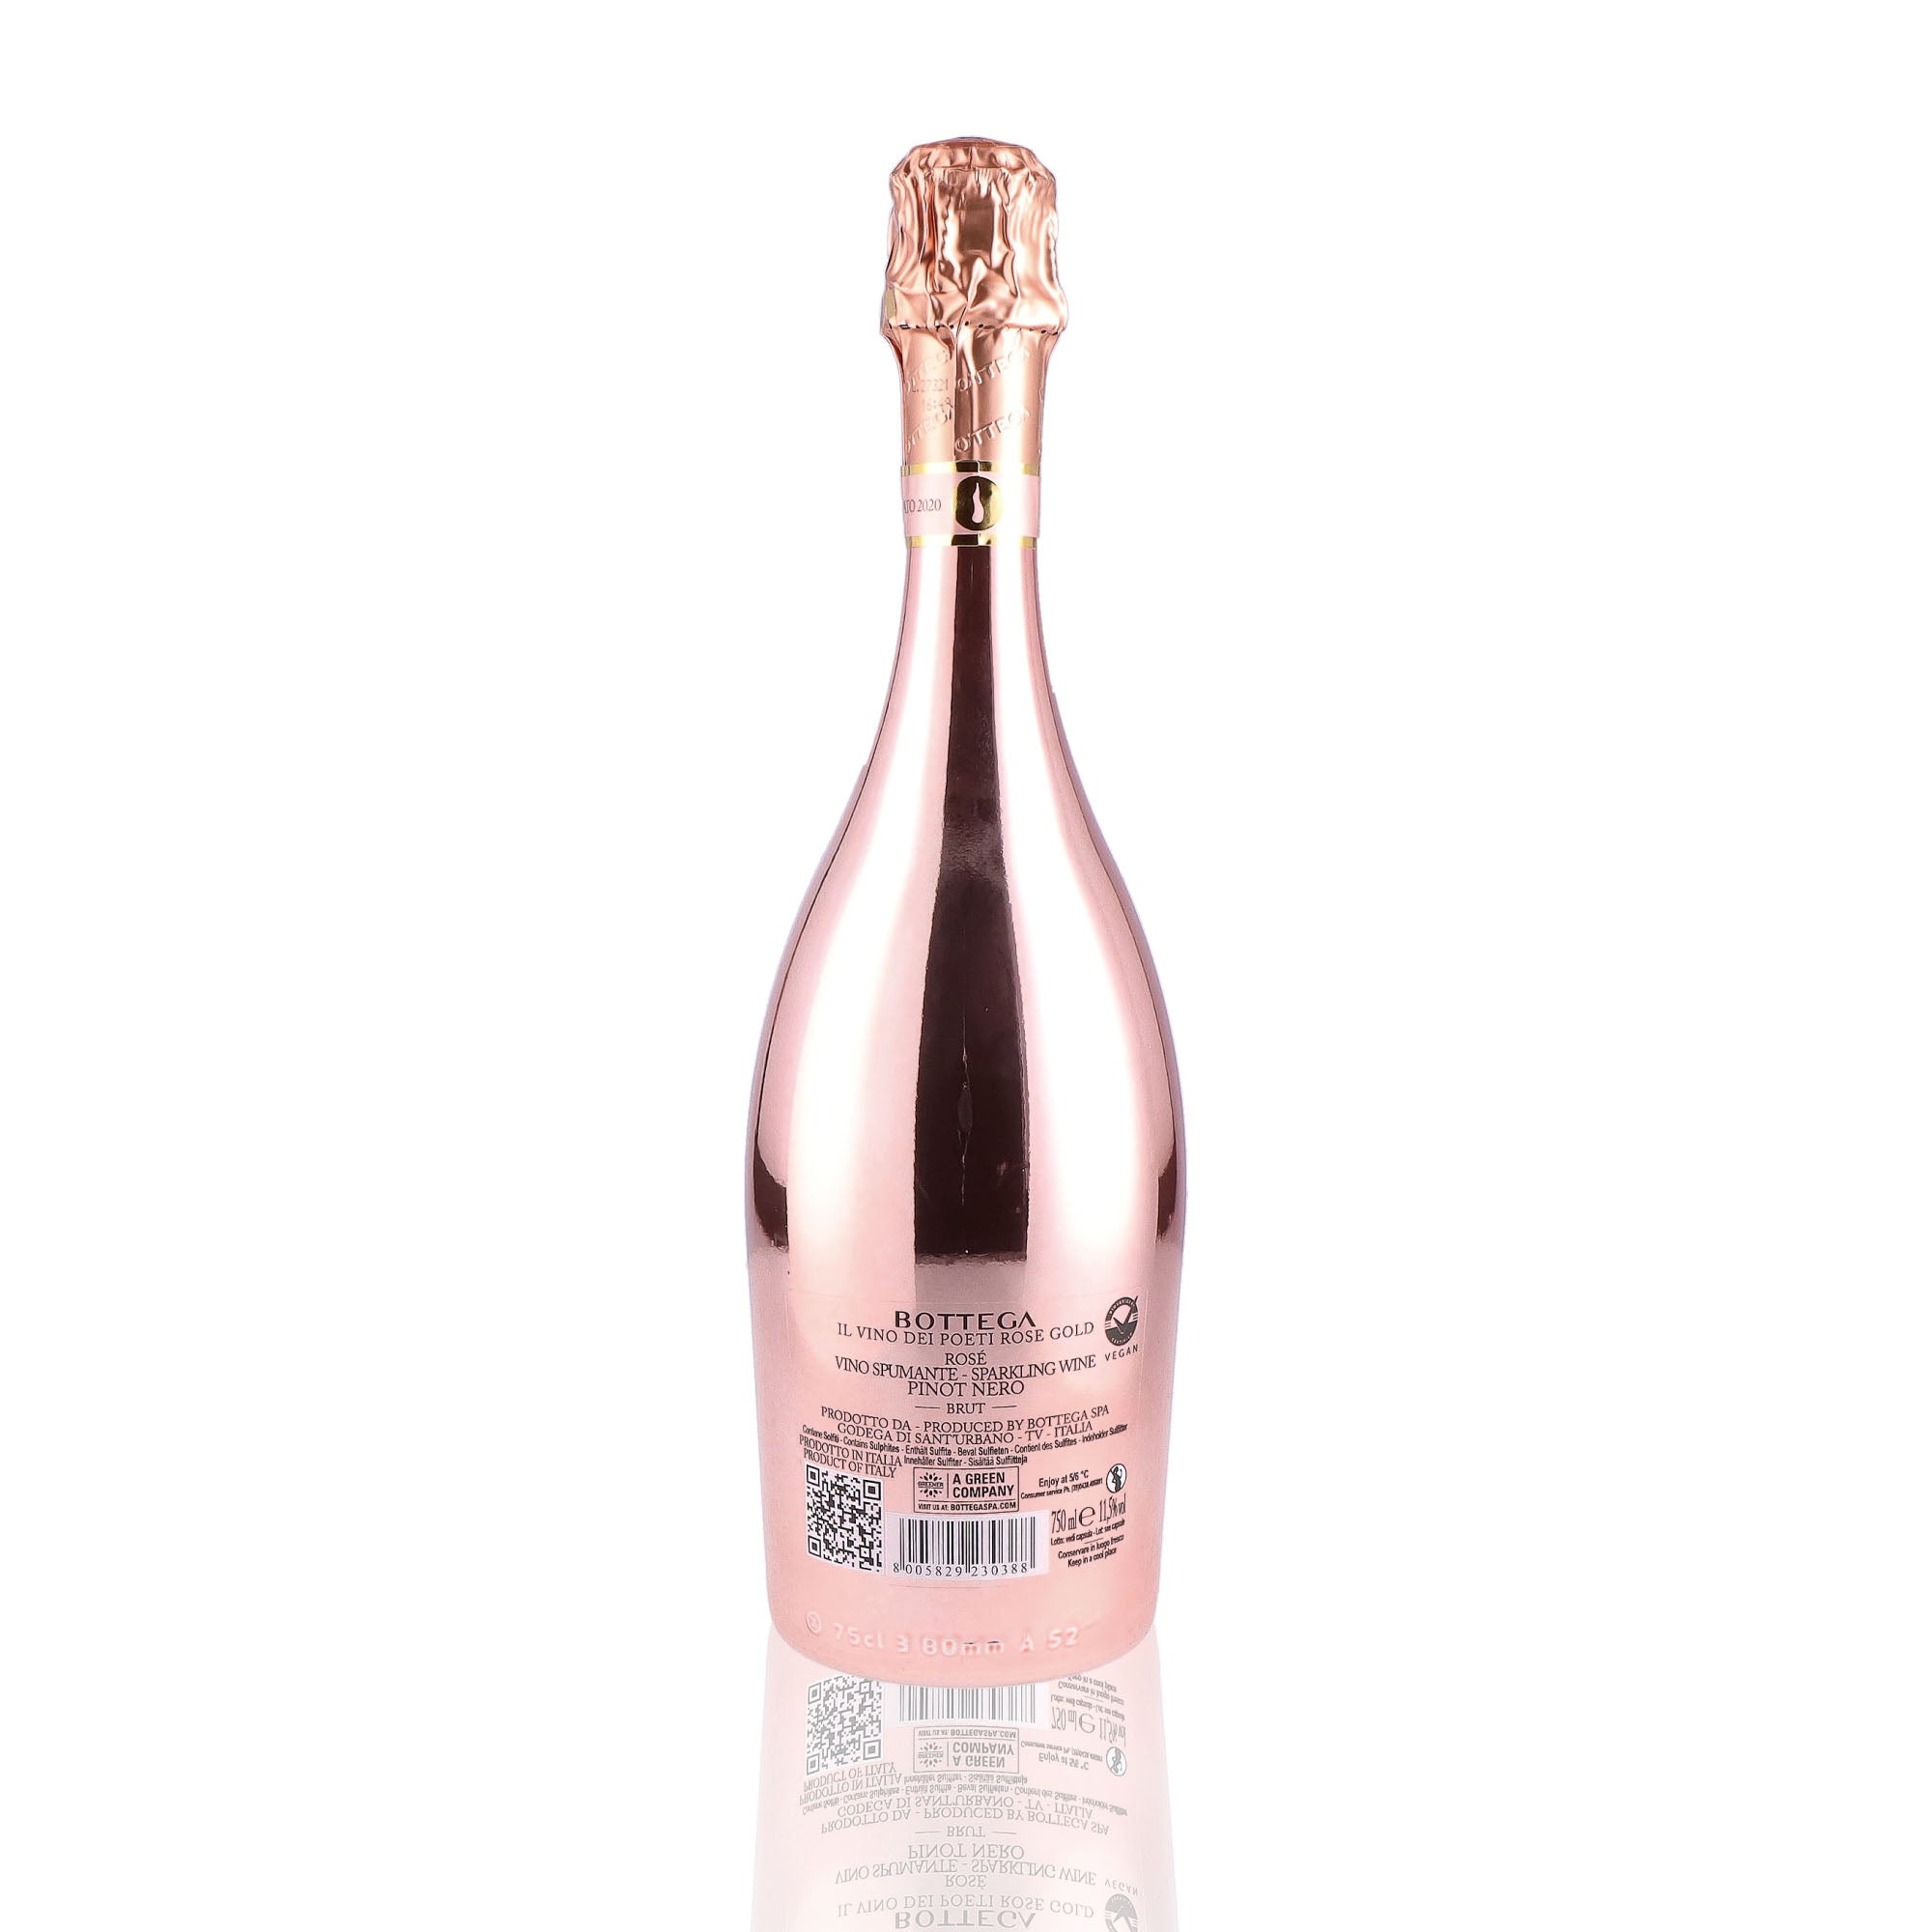 Une bouteille de prosecco de la marque Bottega, de type rosé, nommée gold.